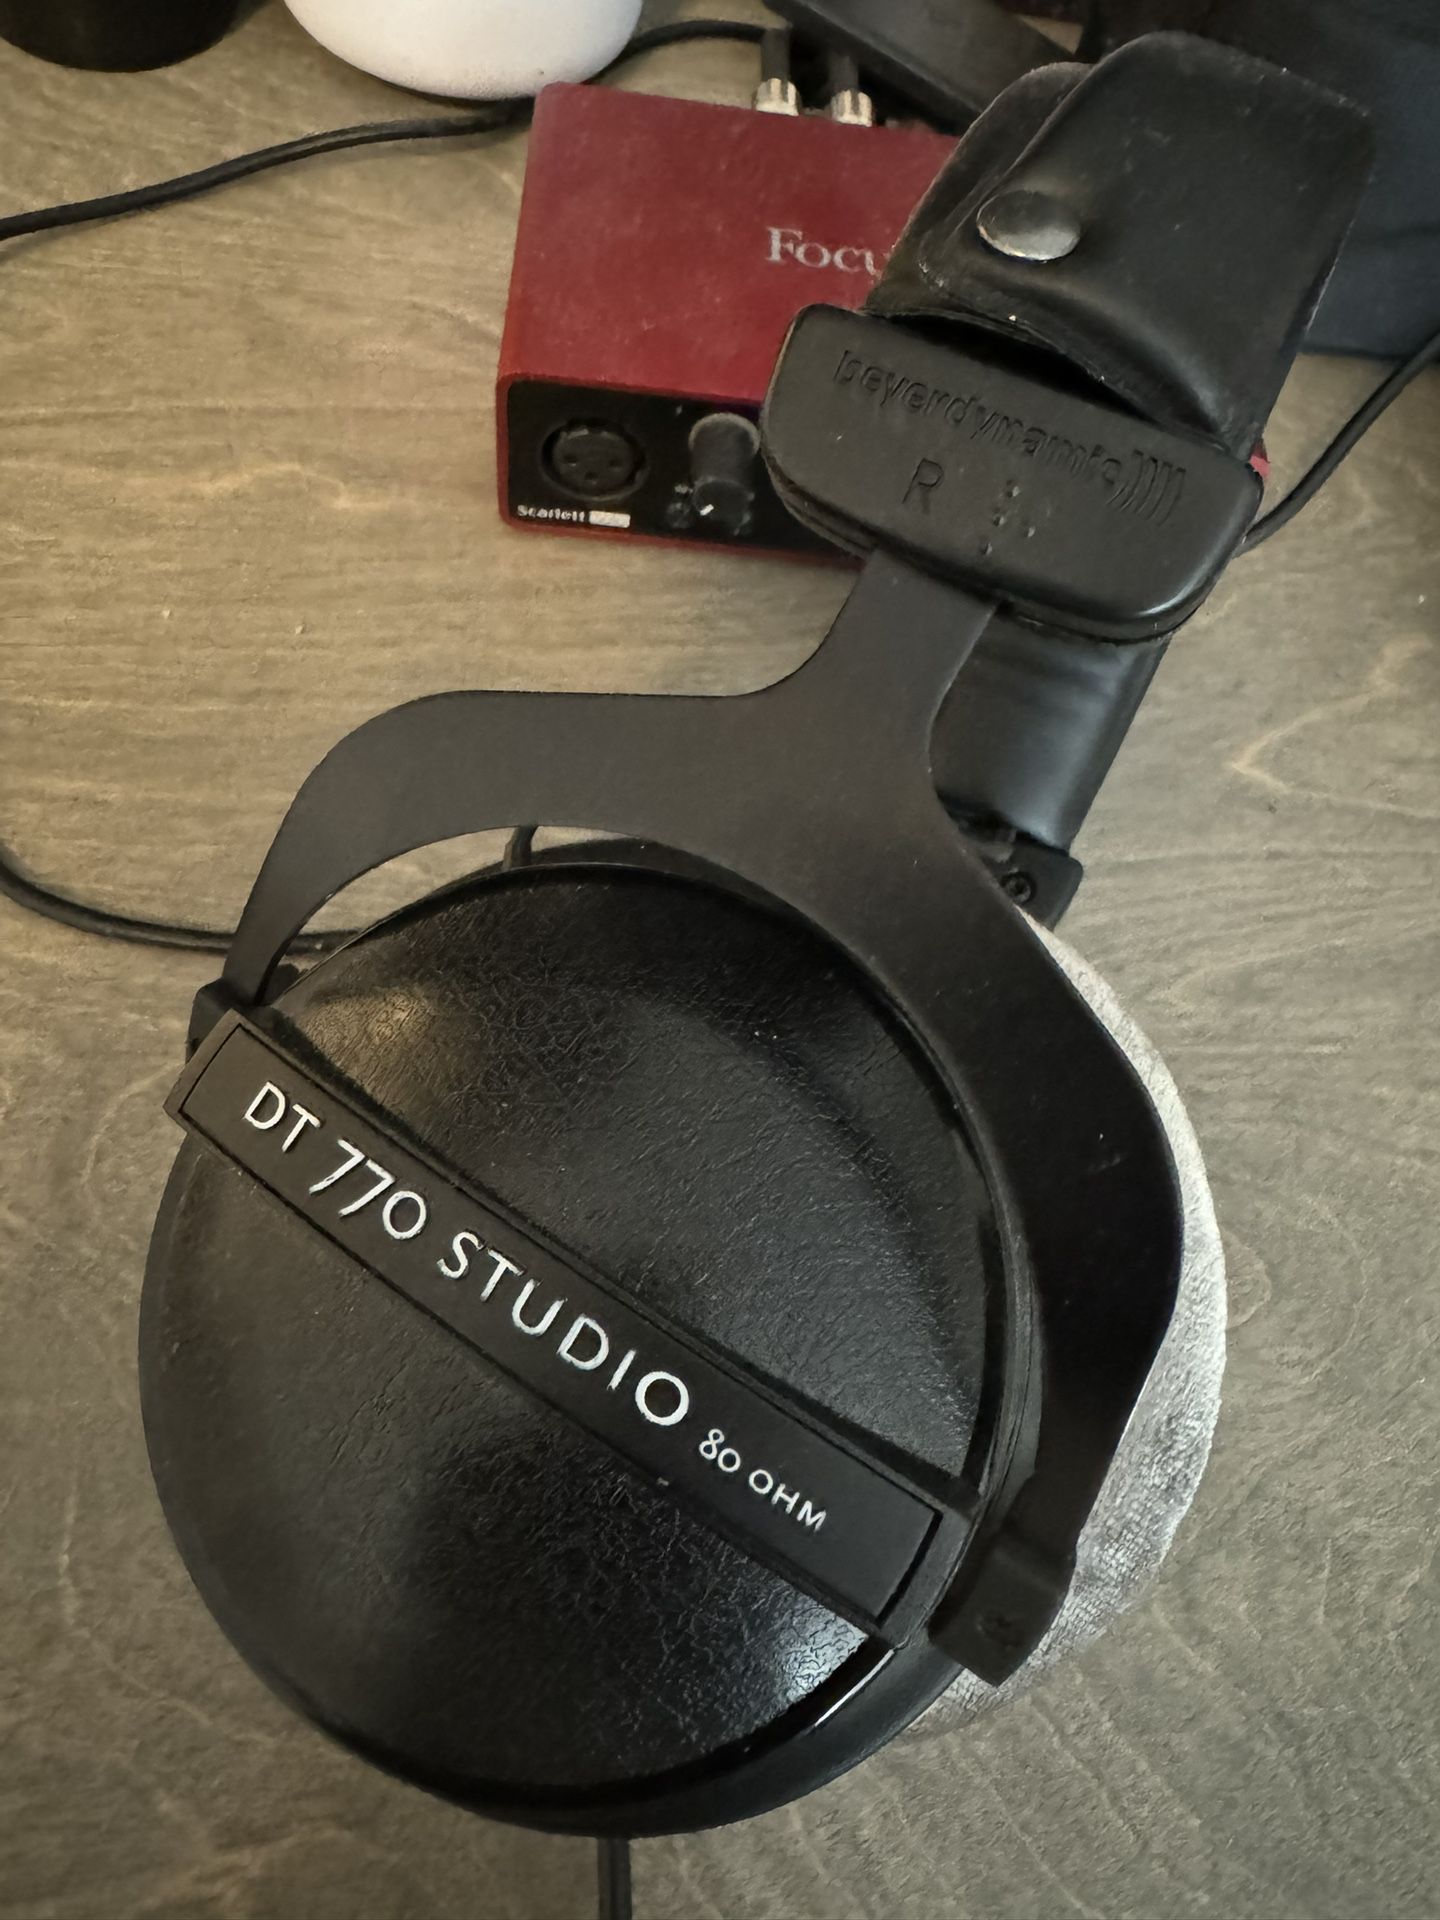 DT 770 STUDIO headphones 